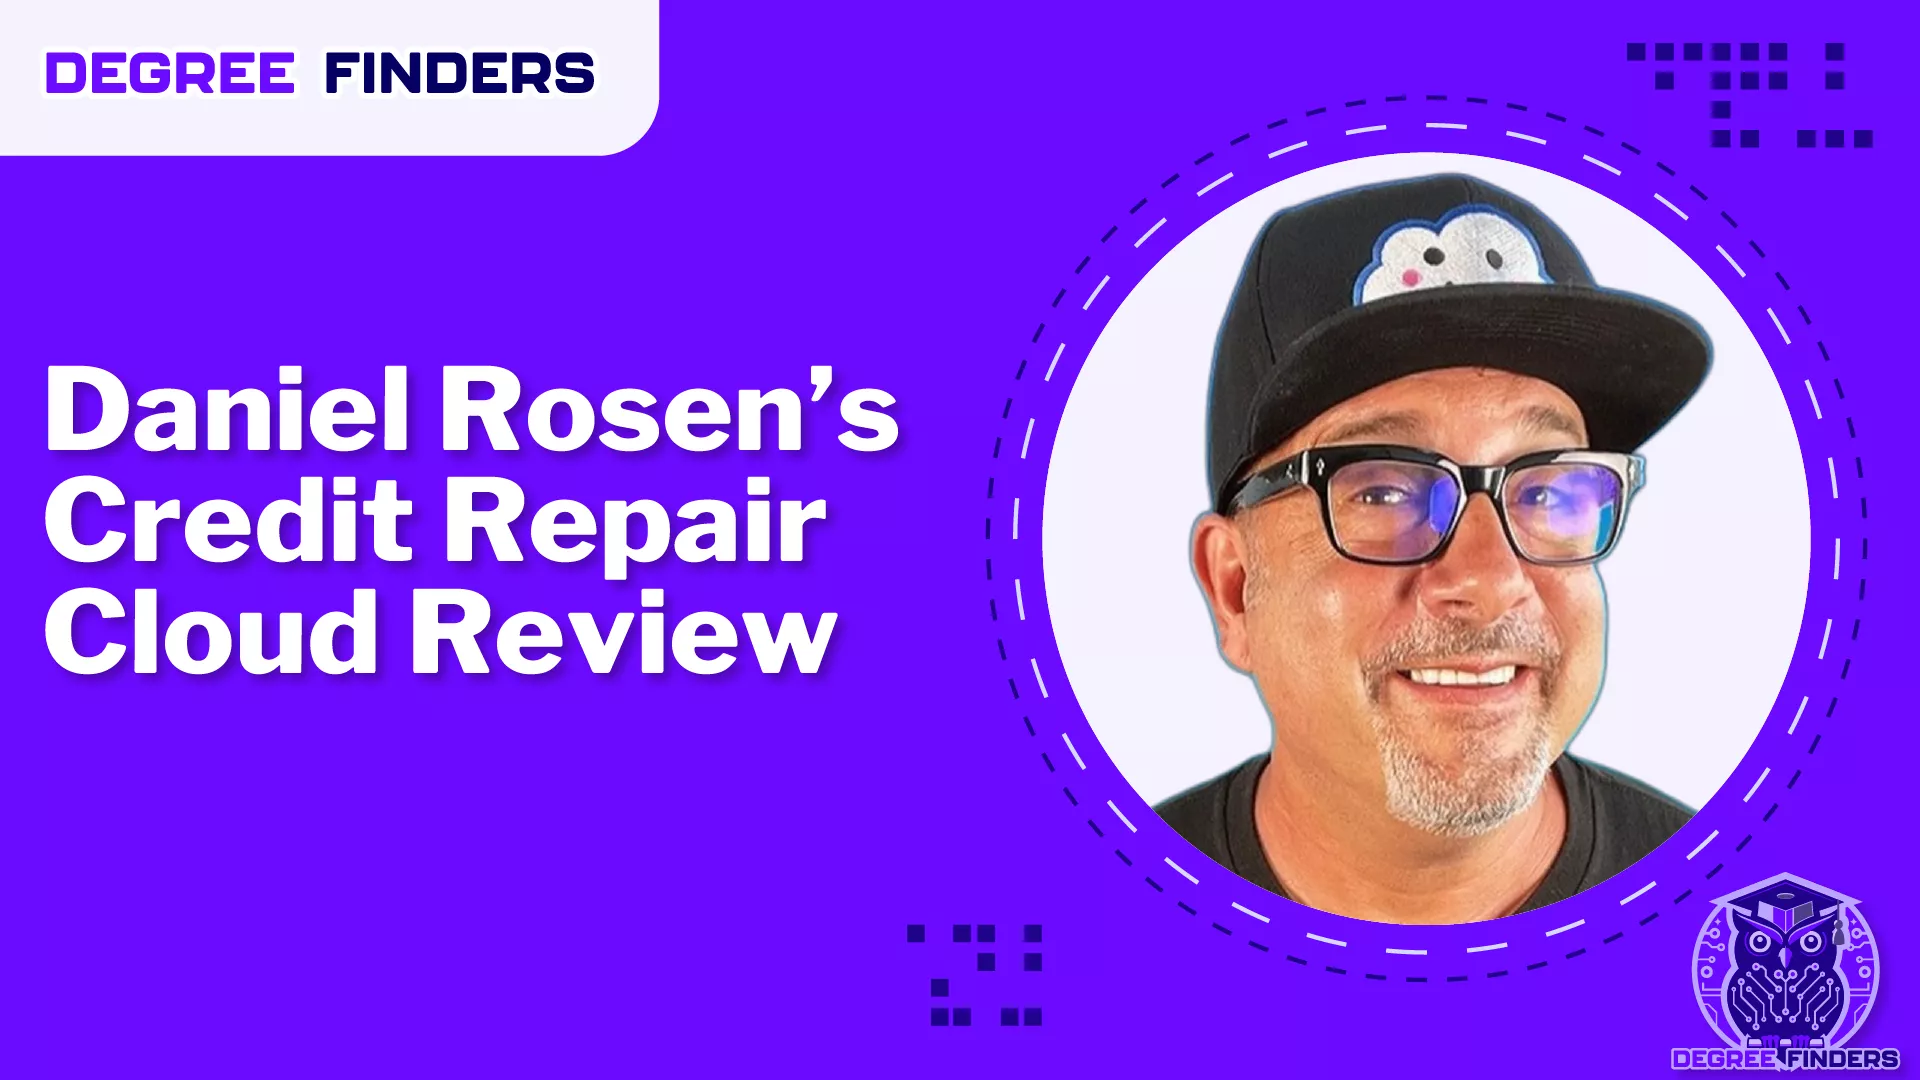 Daniel Rosen’s Credit Repair Cloud Review